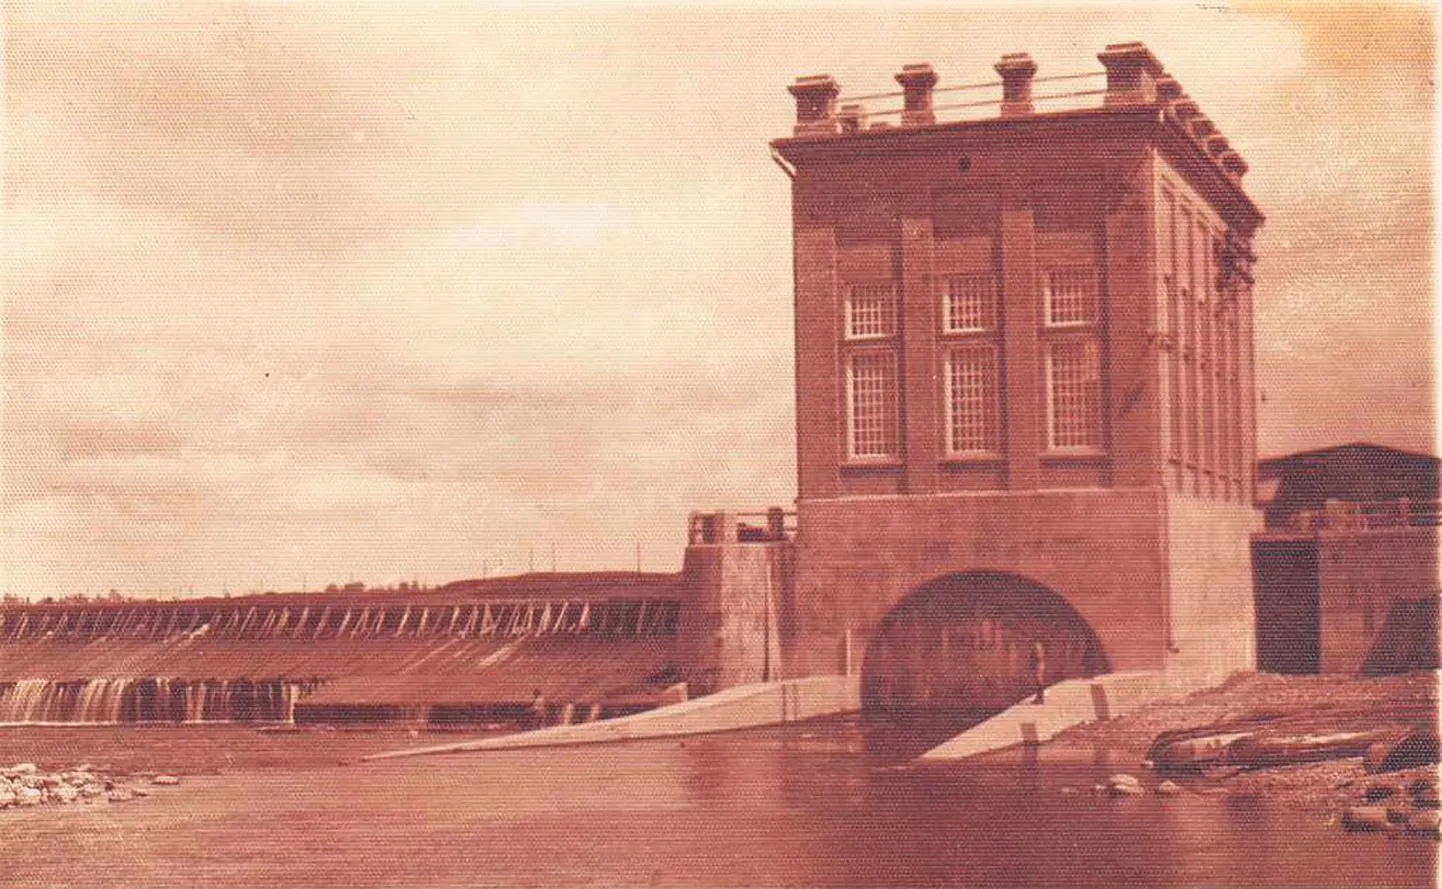 Sindi vabrikule läks uue hüdroelektrijaama ehitamine maksma 240 000 krooni. Elektrifitseerimistöödele kulus kokku veel ligi 130 000 krooni. Juba 1930. aastal kavandati jõele uut paisu, mis ehitati alles 1974. aastal.